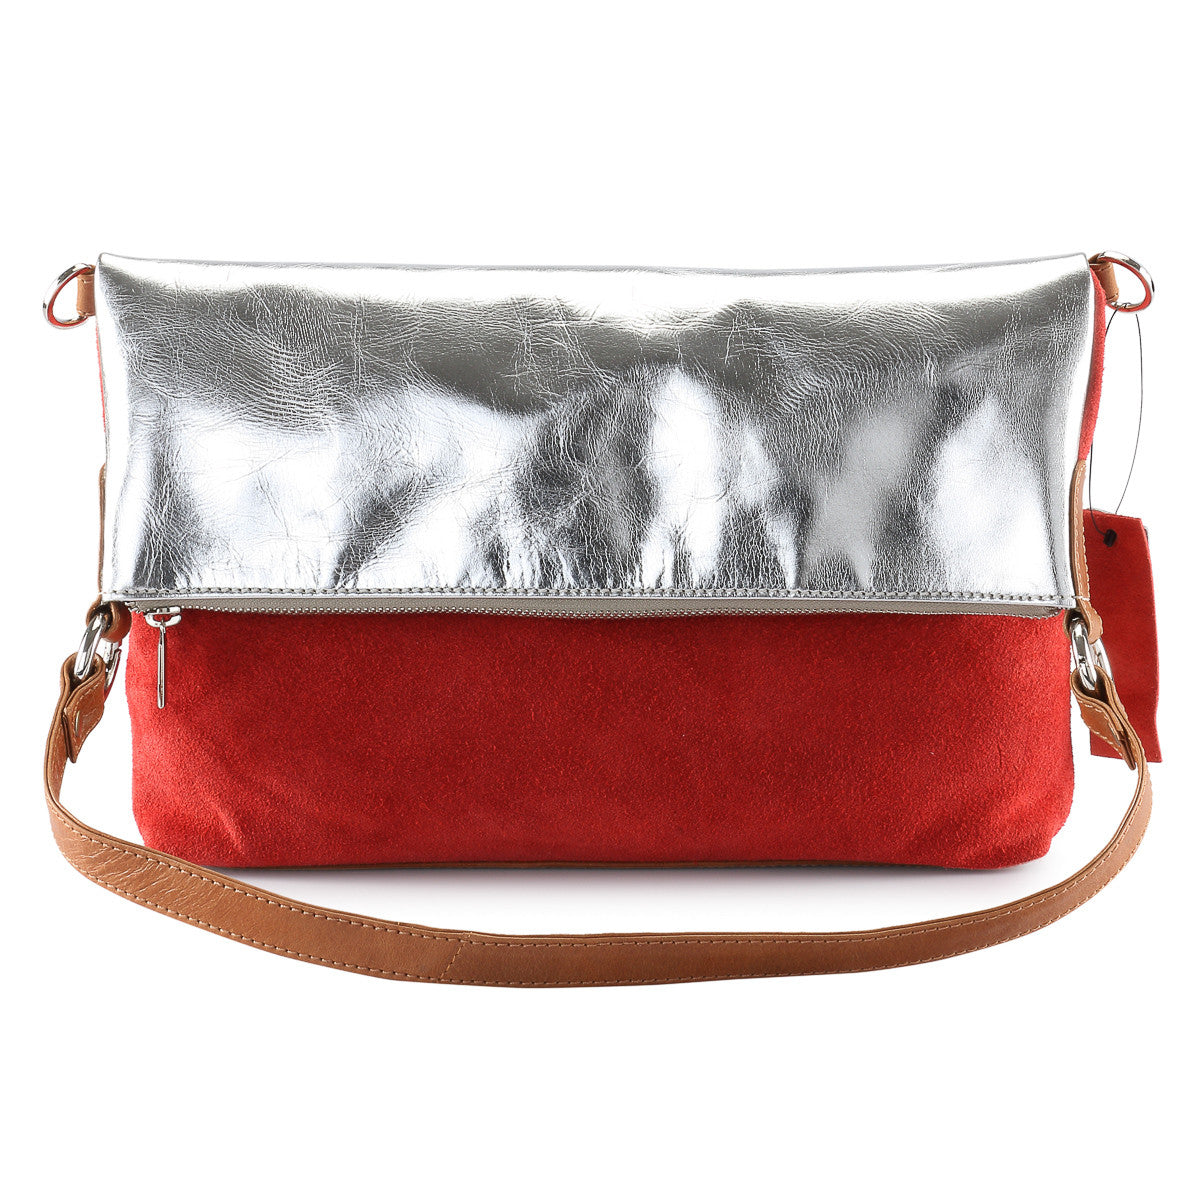 Red diamanté clutch bag – All Occasions Closet